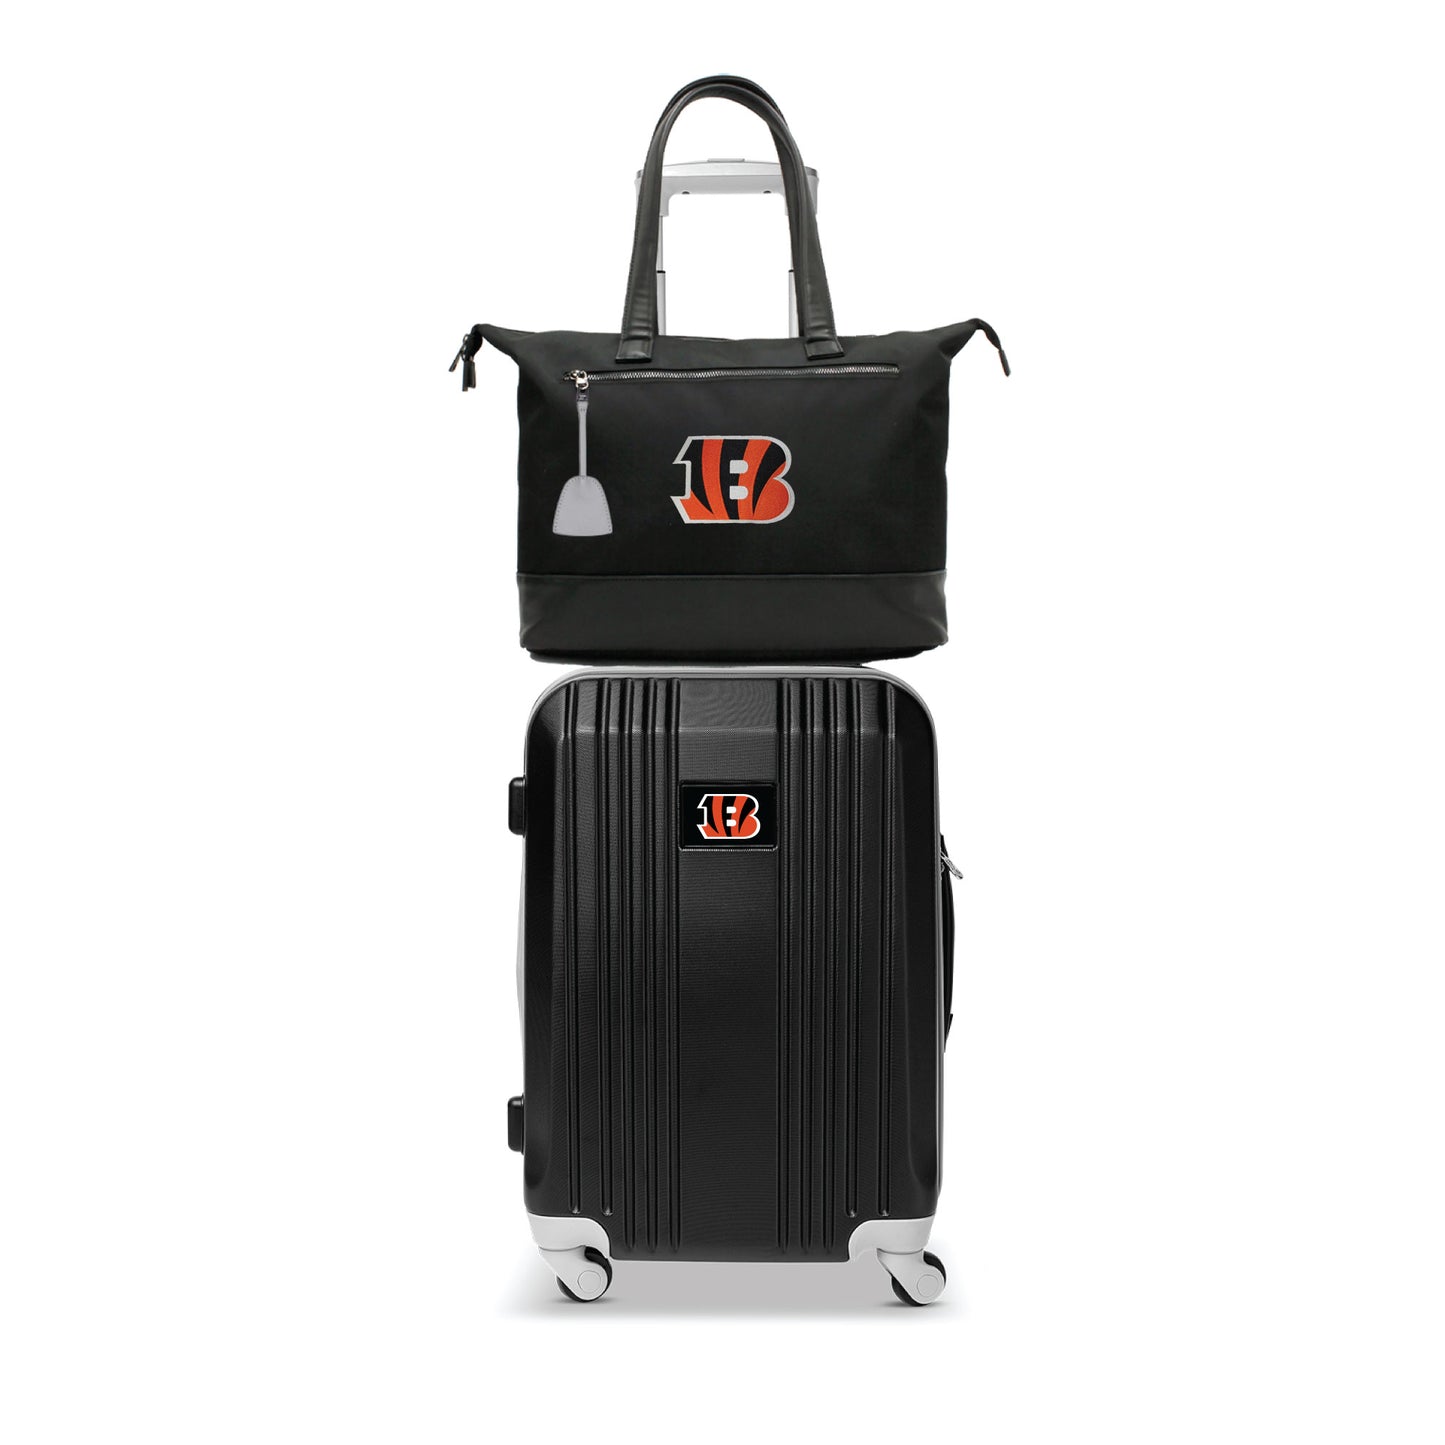 Cincinnati Bengals Premium Laptop Tote Bag and Luggage Set